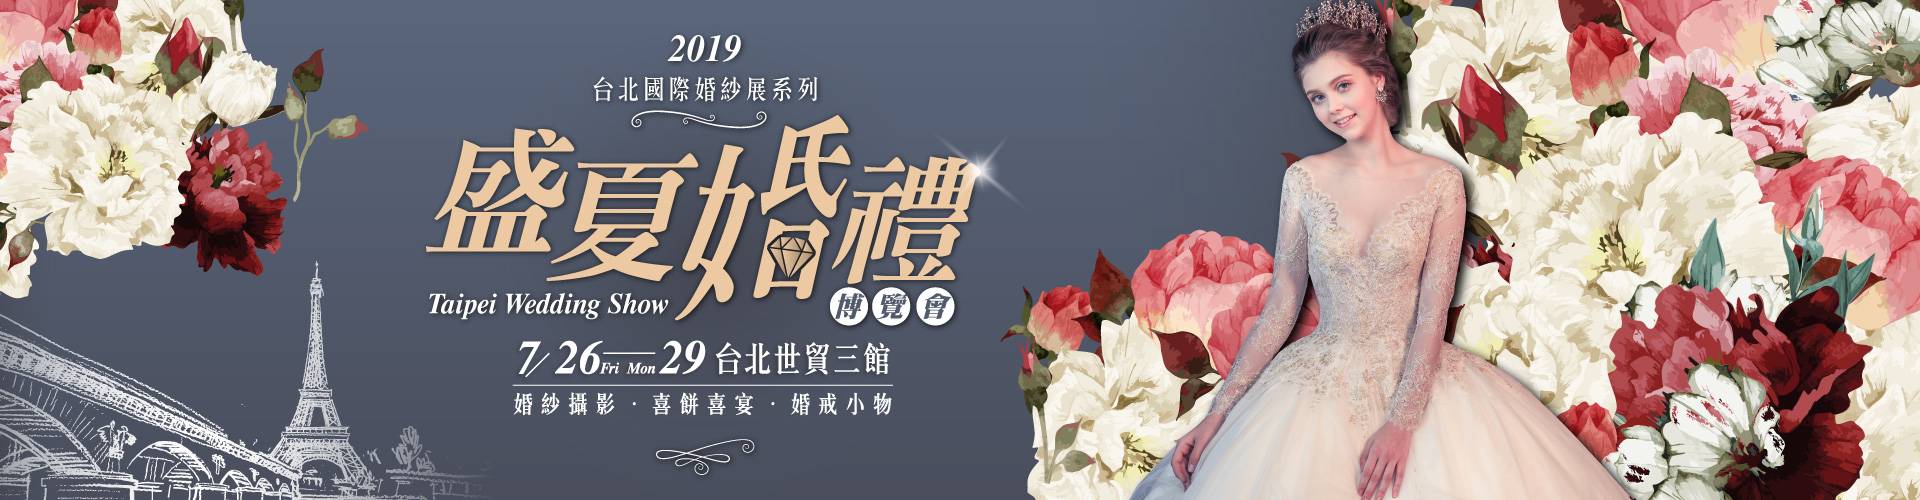 2019台北國際婚紗展